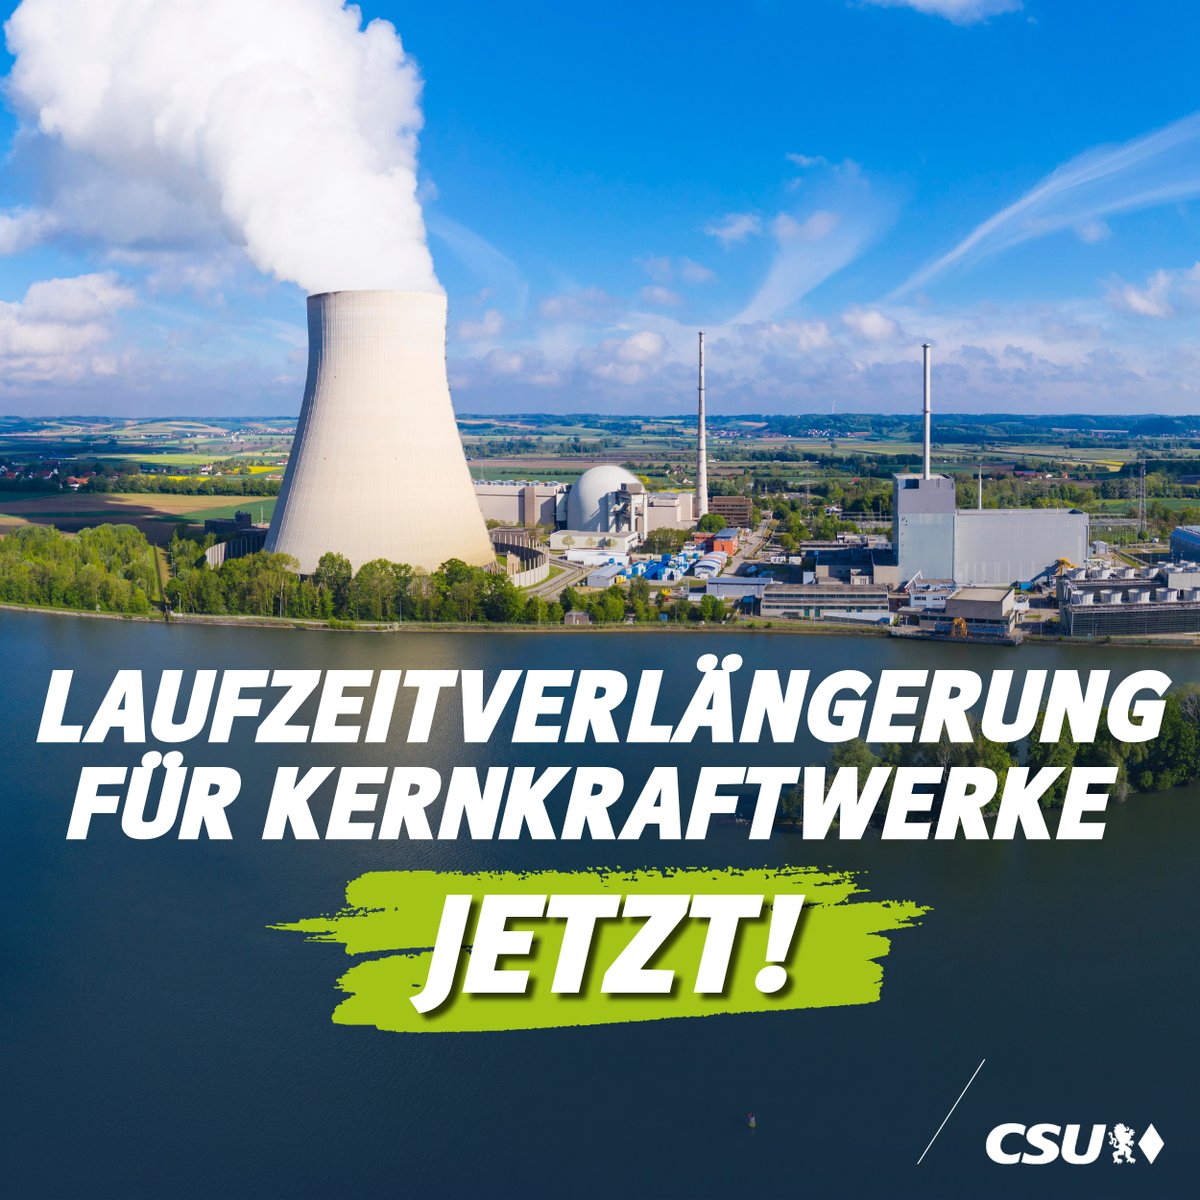 Wir fordern: Echte #Laufzeitverlängerung statt Ampel-Ideologie! Deutschland braucht Versorgungssicherheit und keine zusätzliche Verschärfung der Strompreise. Die #Kernkraft muss bis mindestens Ende 2024 verlängert werden!